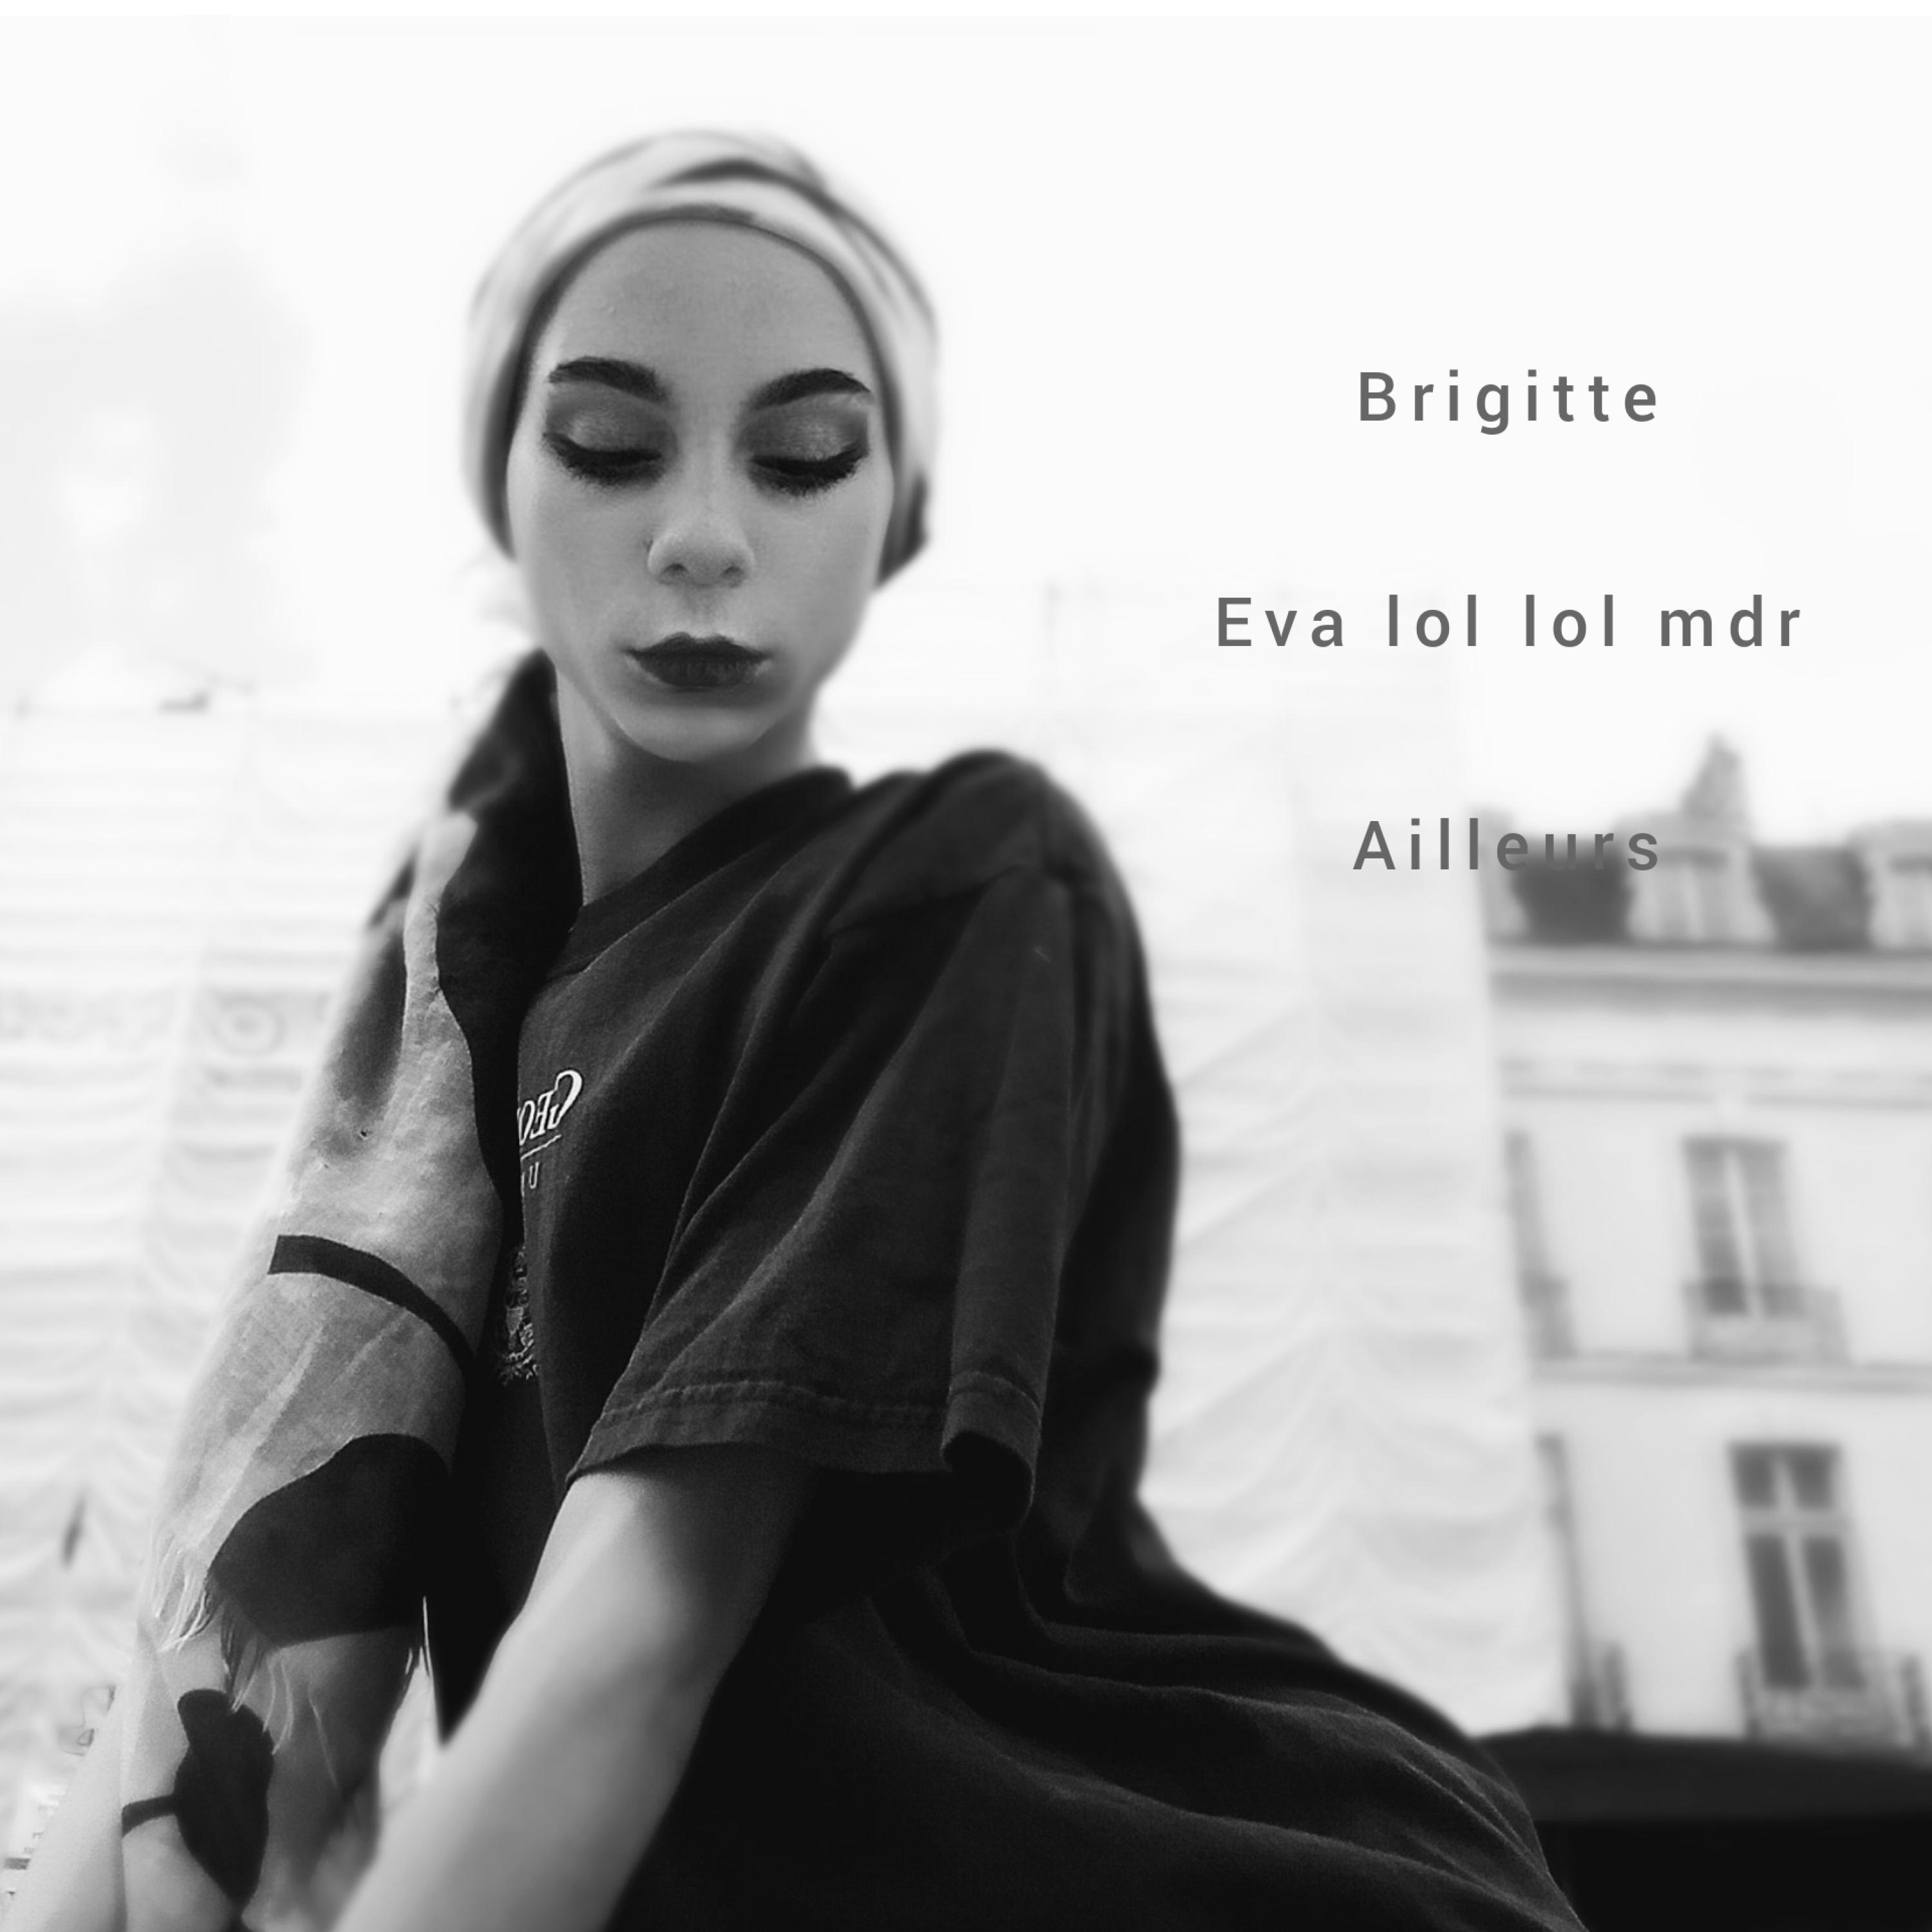 Eva lol lol mdr - Ailleurs (feat. Brigitte)